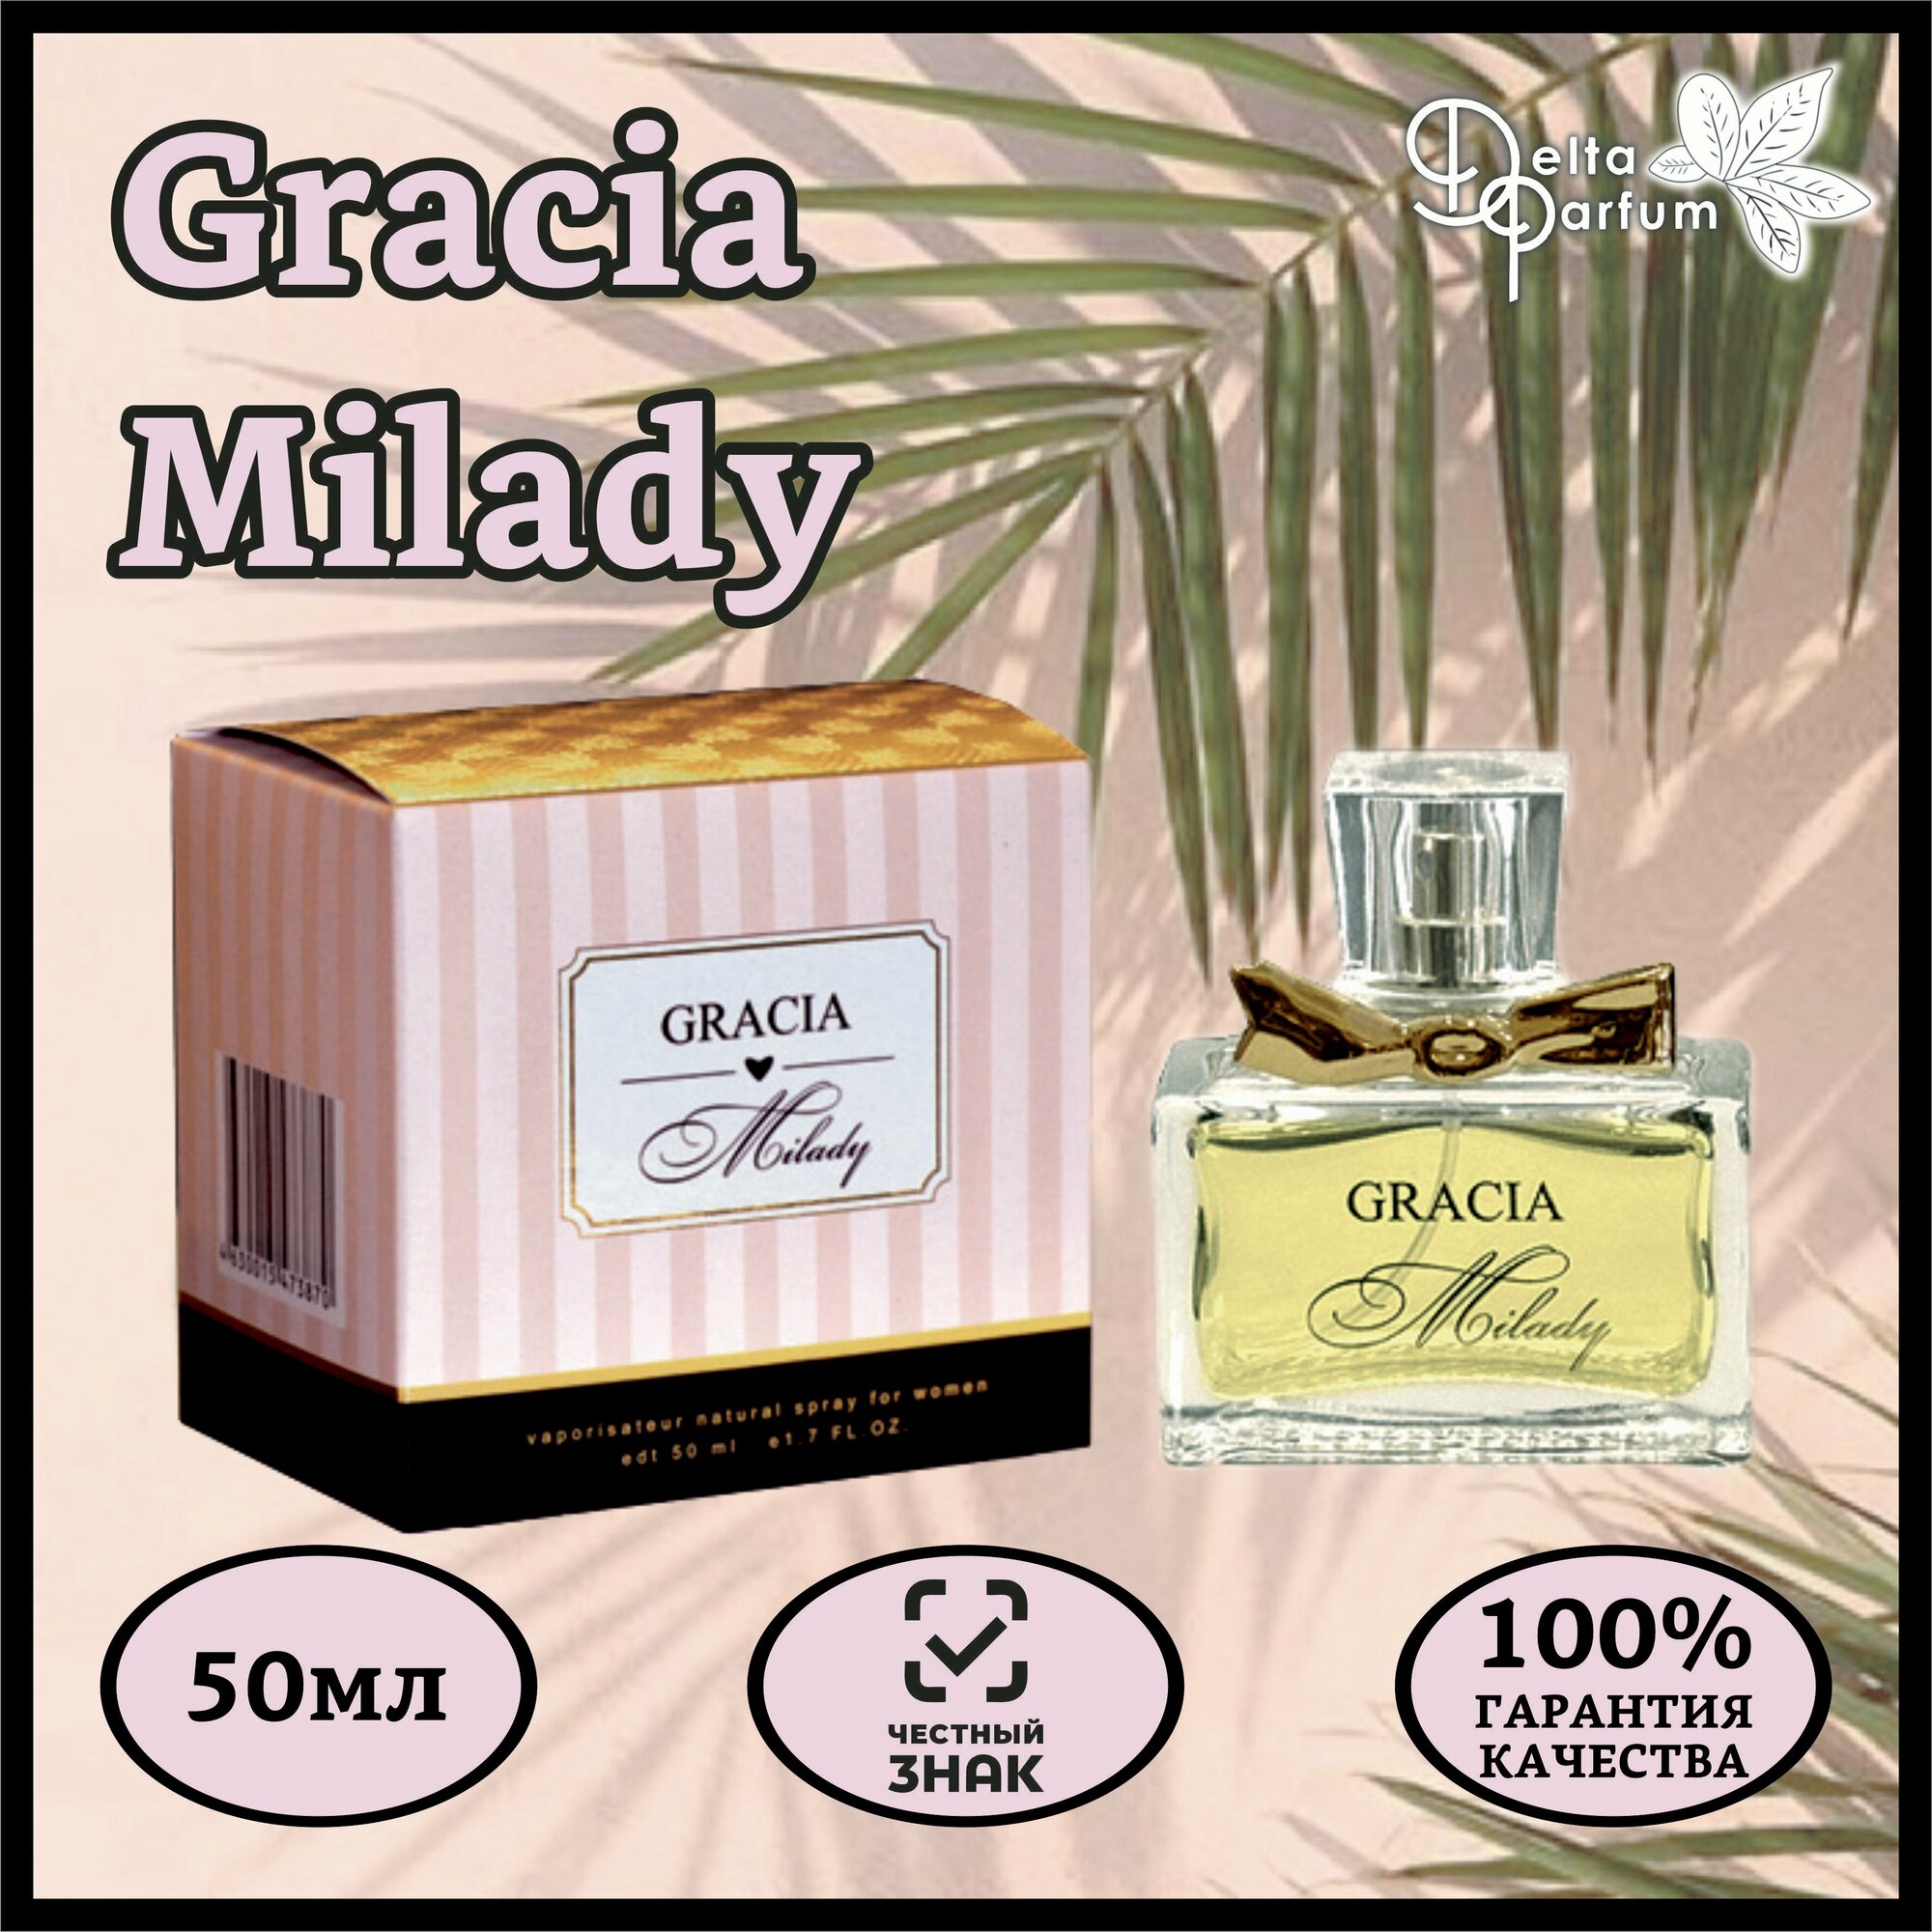 Delta parfum Туалетная вода женская Gracia Milady